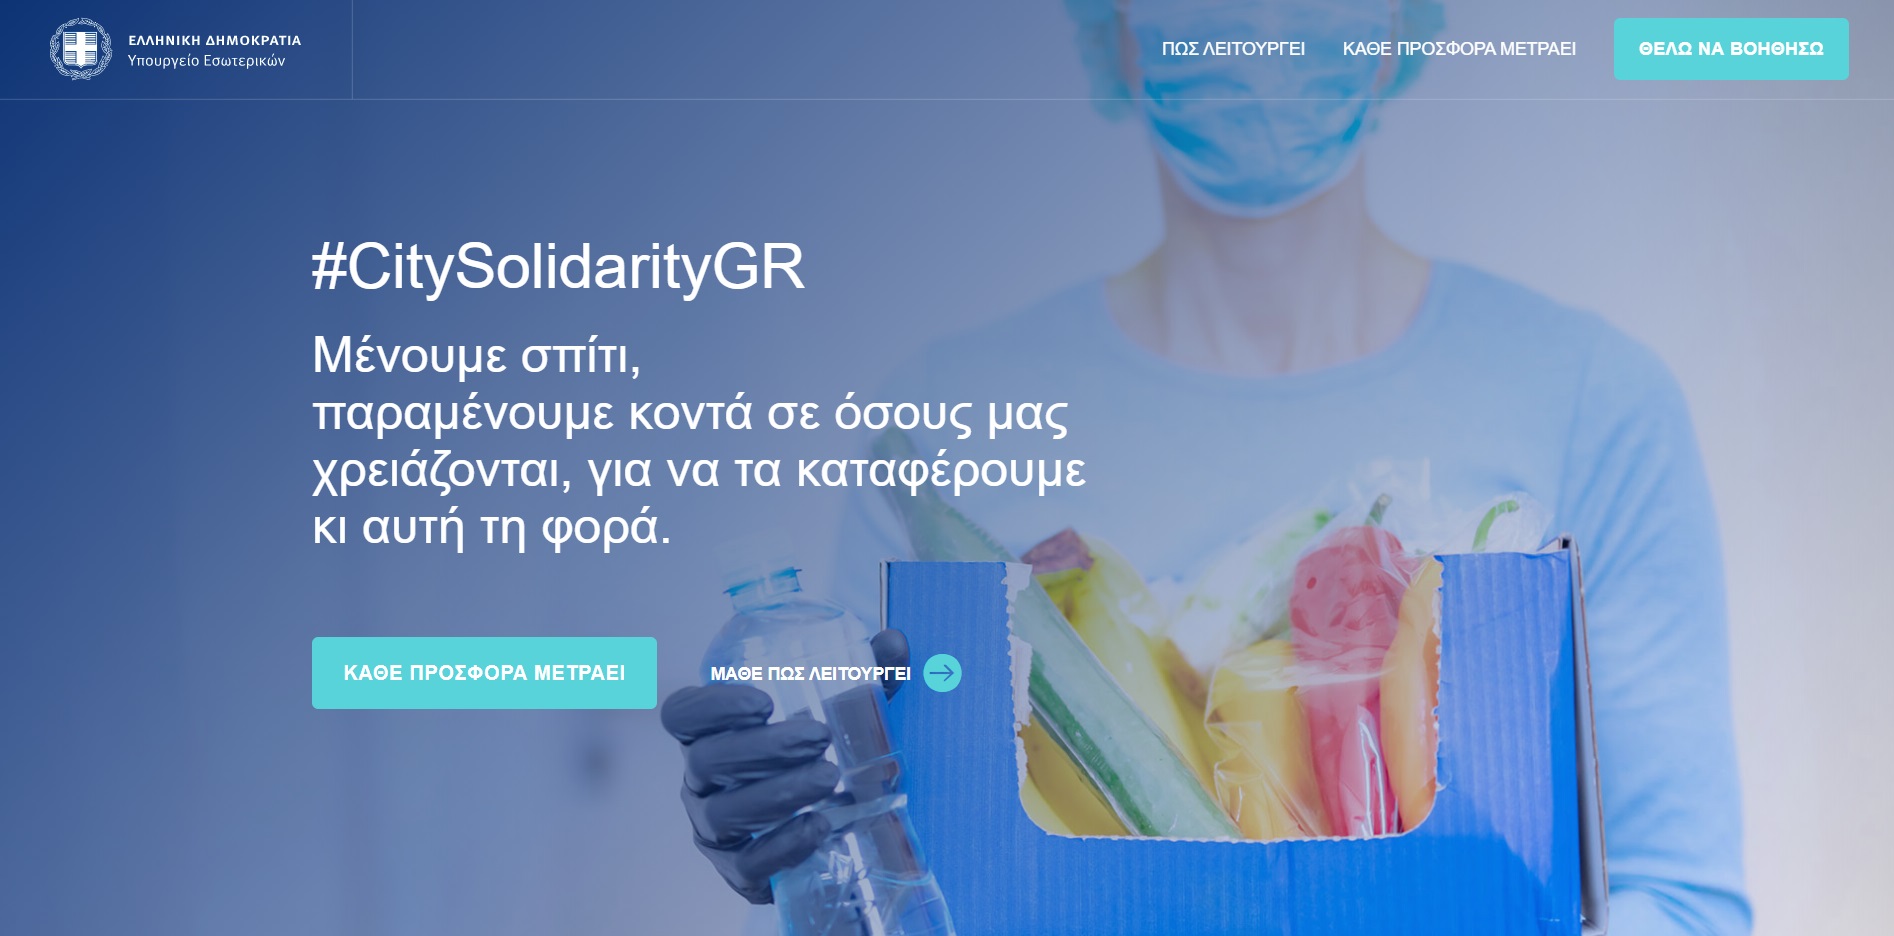  #CitySolidaritygr & #AnimalSolidarity.gr | Δύο νέες πλατφόρμες Αλληλεγγύης